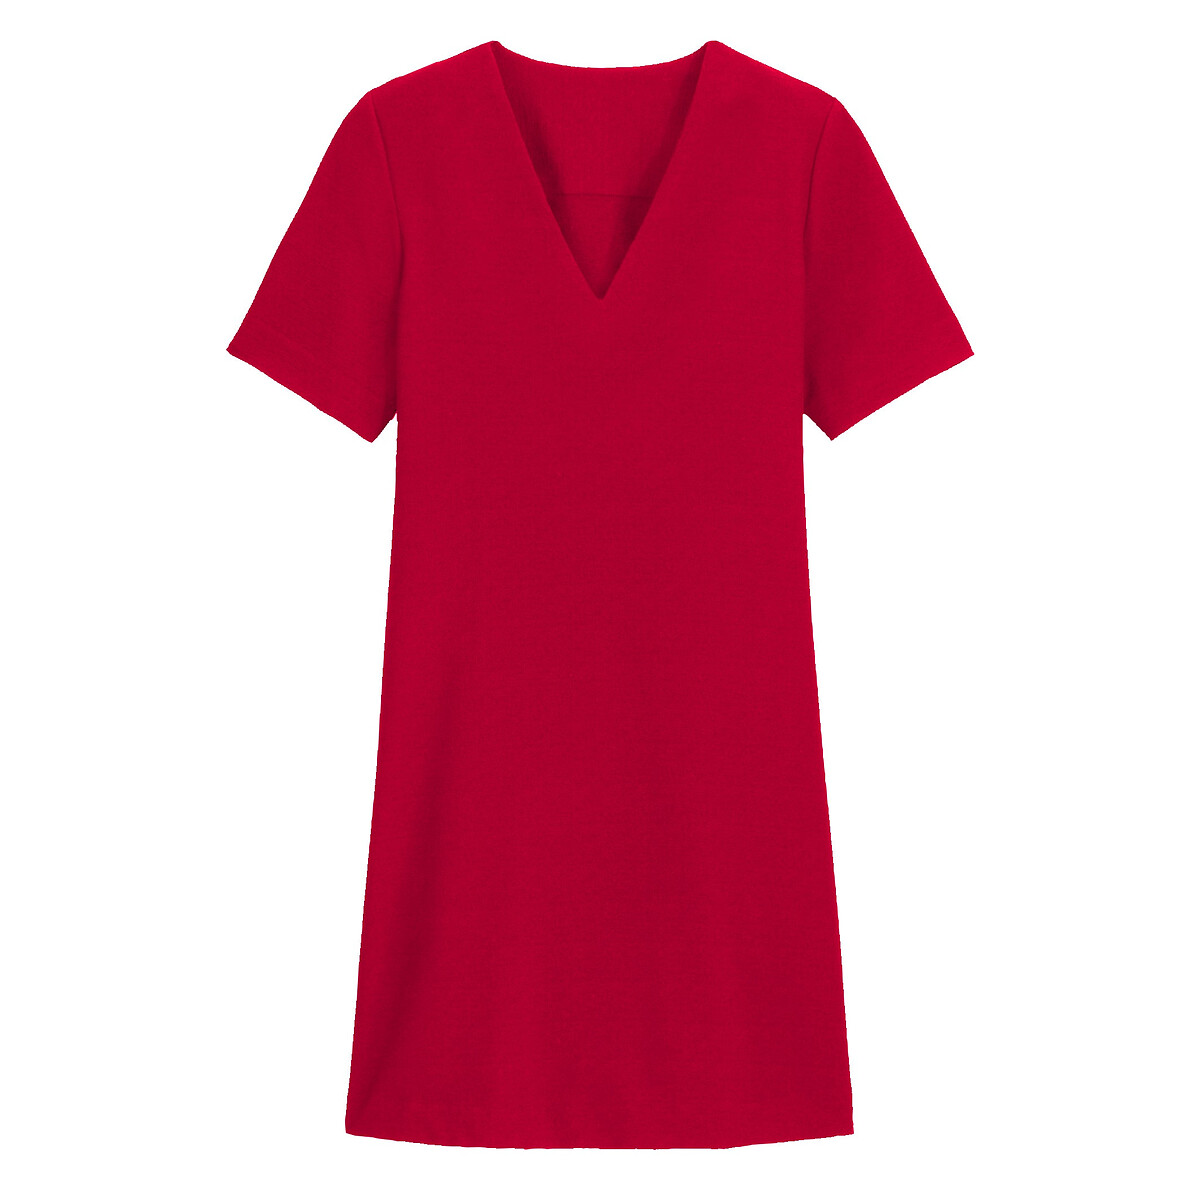 Расклешенное La Redoute Платье с V-образным вырезом и коротким рукавом 42 (FR) - 48 (RUS) красный, размер 42 (FR) - 48 (RUS) Платье с V-образным вырезом и коротким рукавом 42 (FR) - 48 (RUS) красный - фото 5